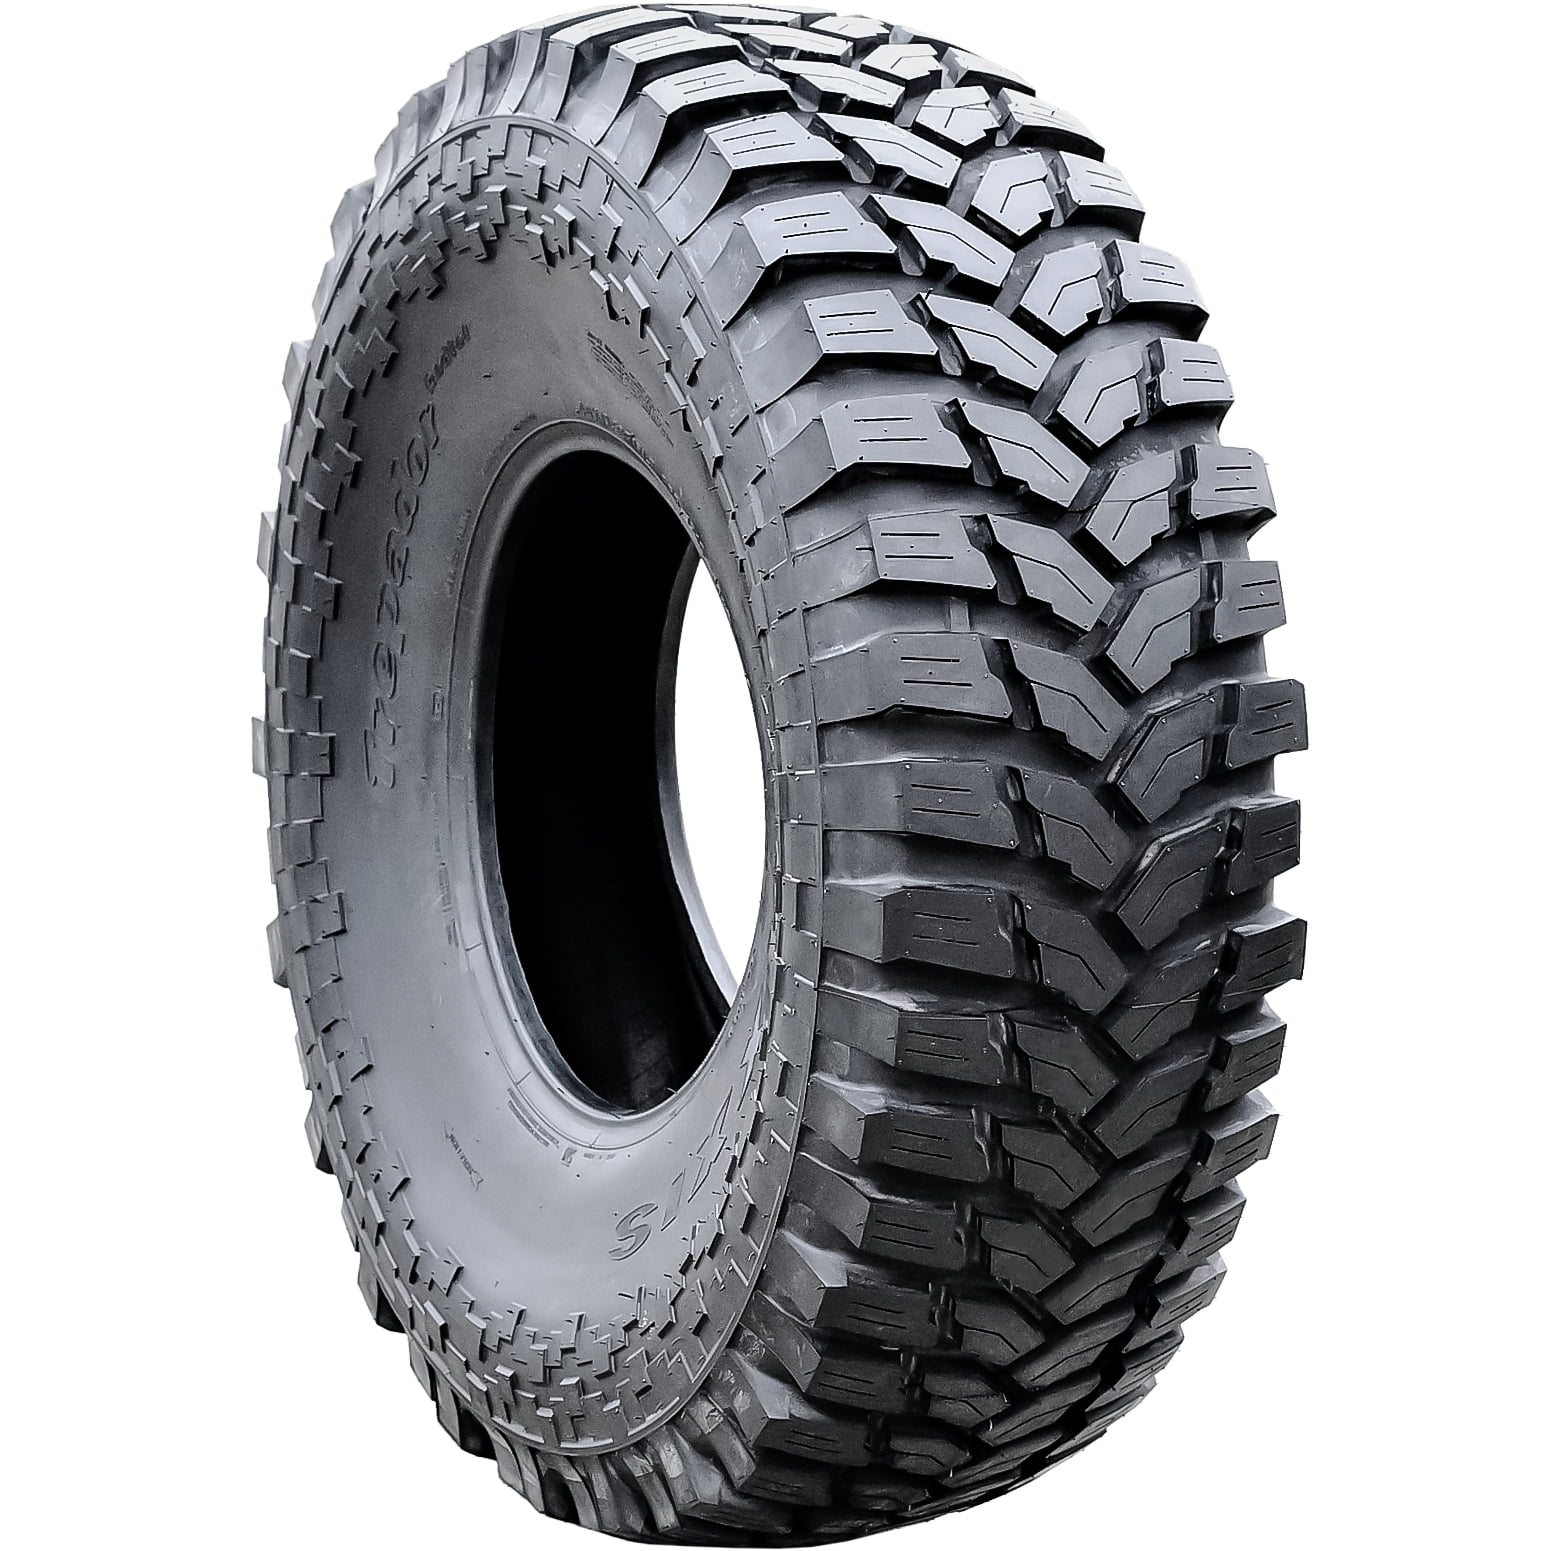 (DC) Maxxis Trepador 35X13.00R20 LT D Load M8060 8 Ply M/T Radial Tire Mud